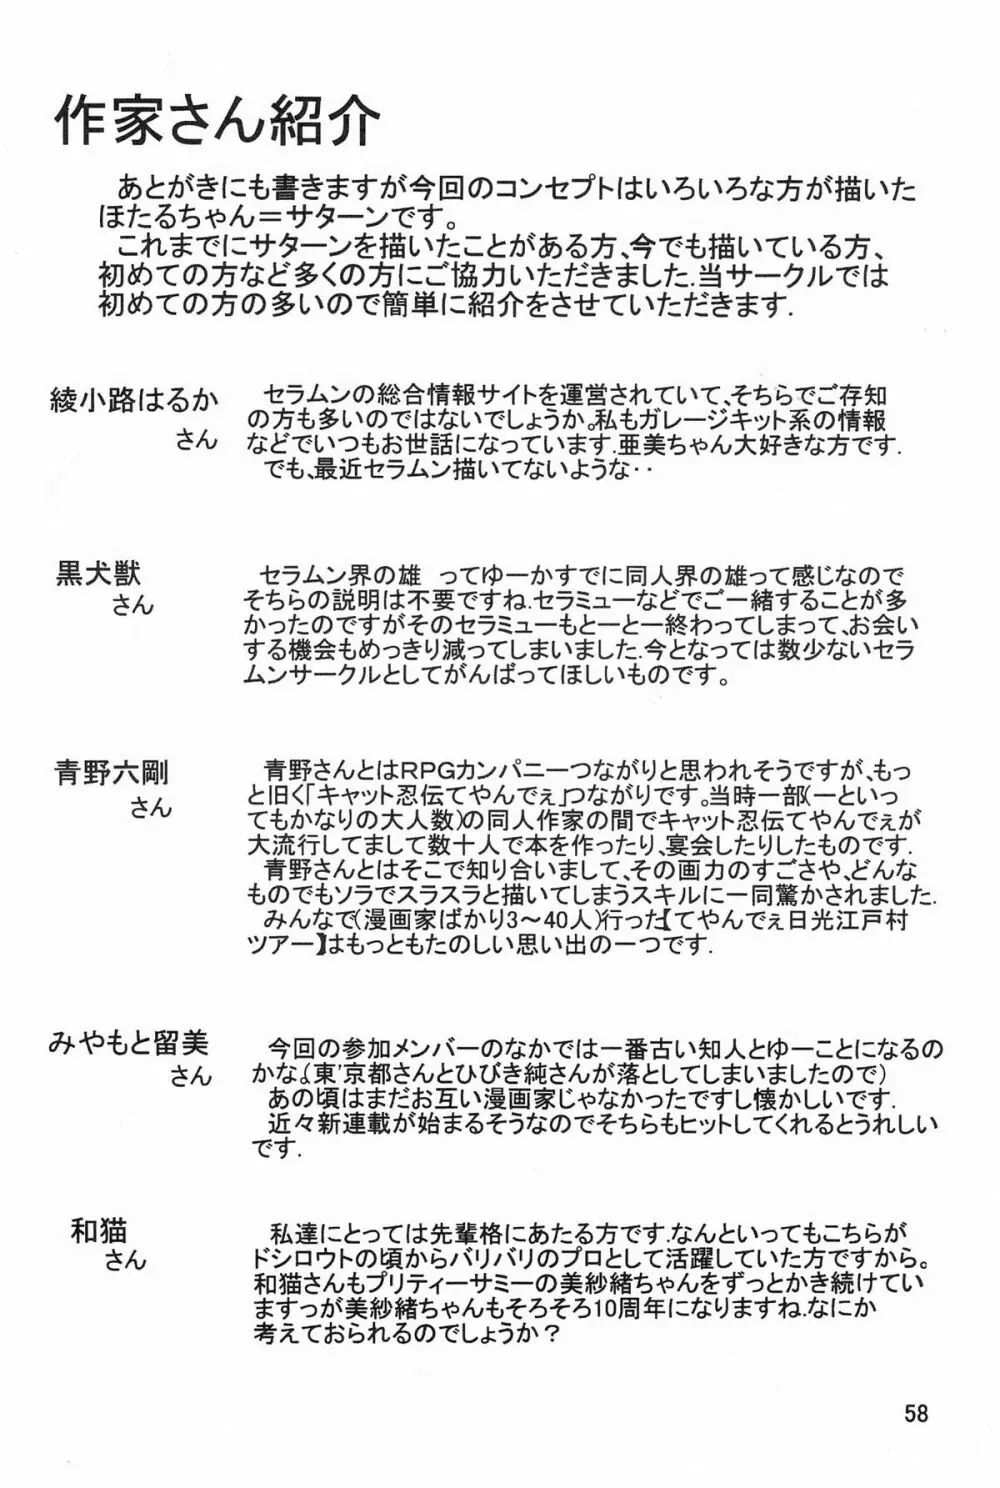 サターン降臨10周年記念本 サイレント・サターン スペシャル 59ページ